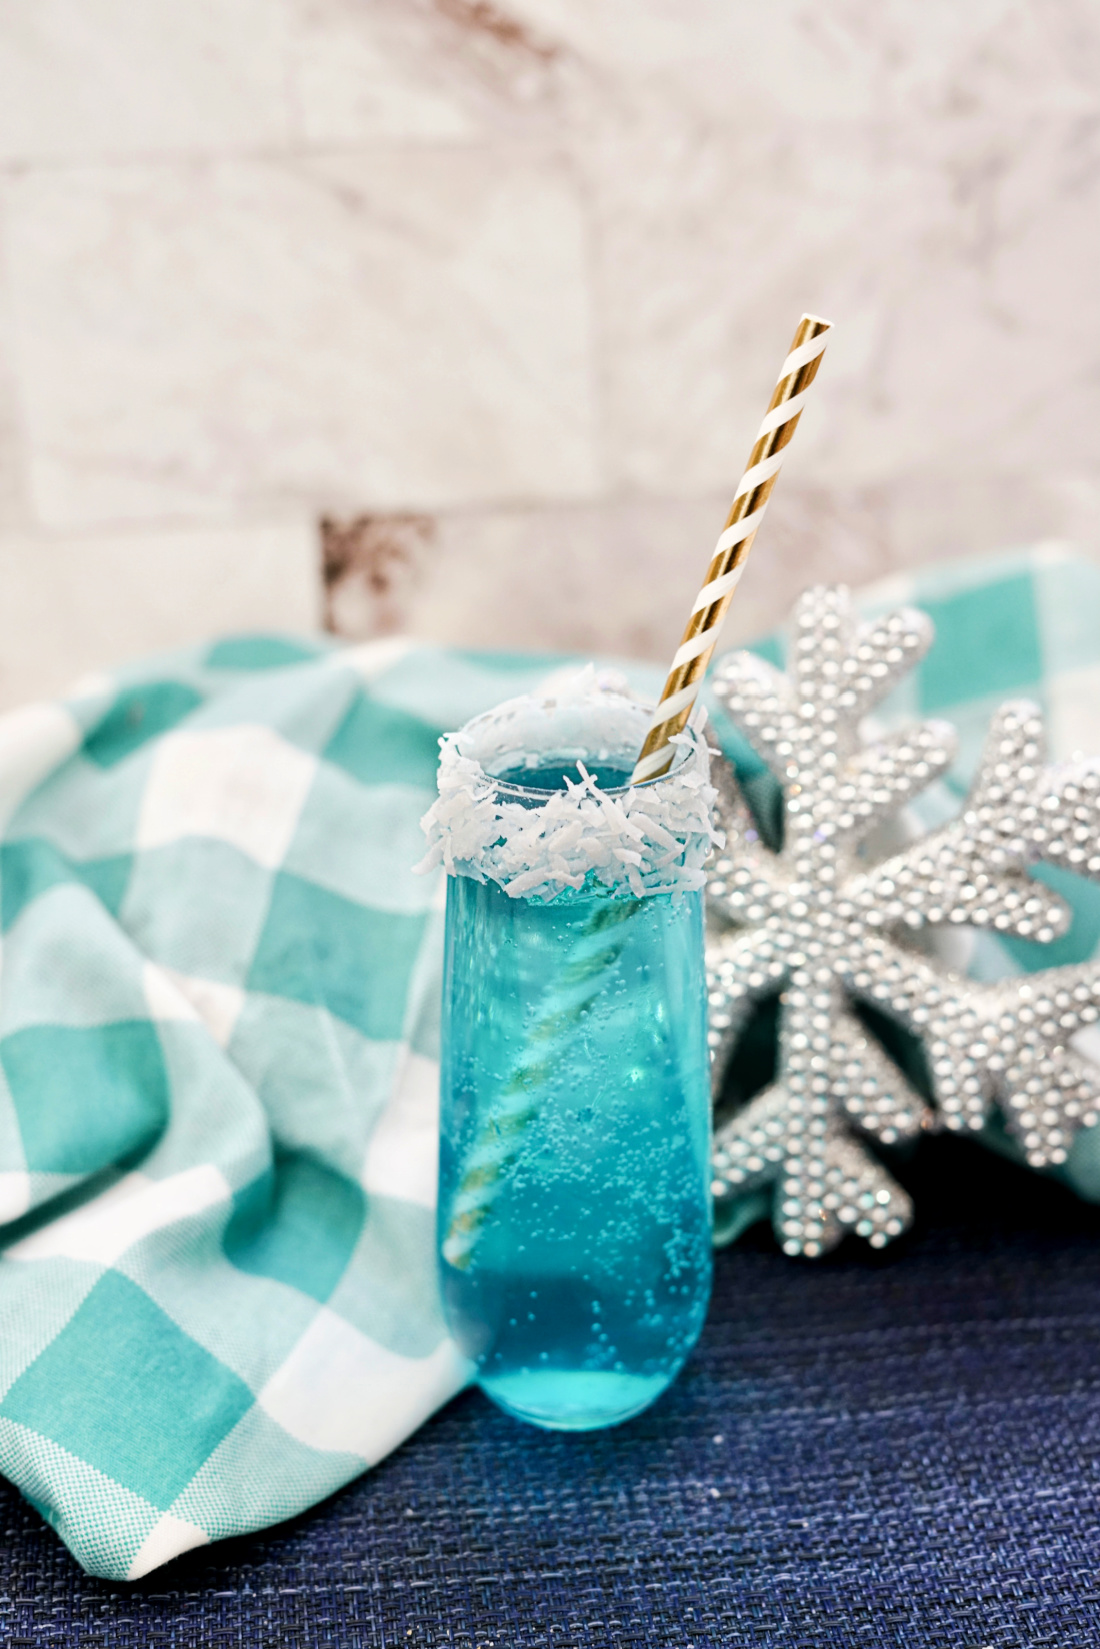 Sparkling Jack Frost Cocktail